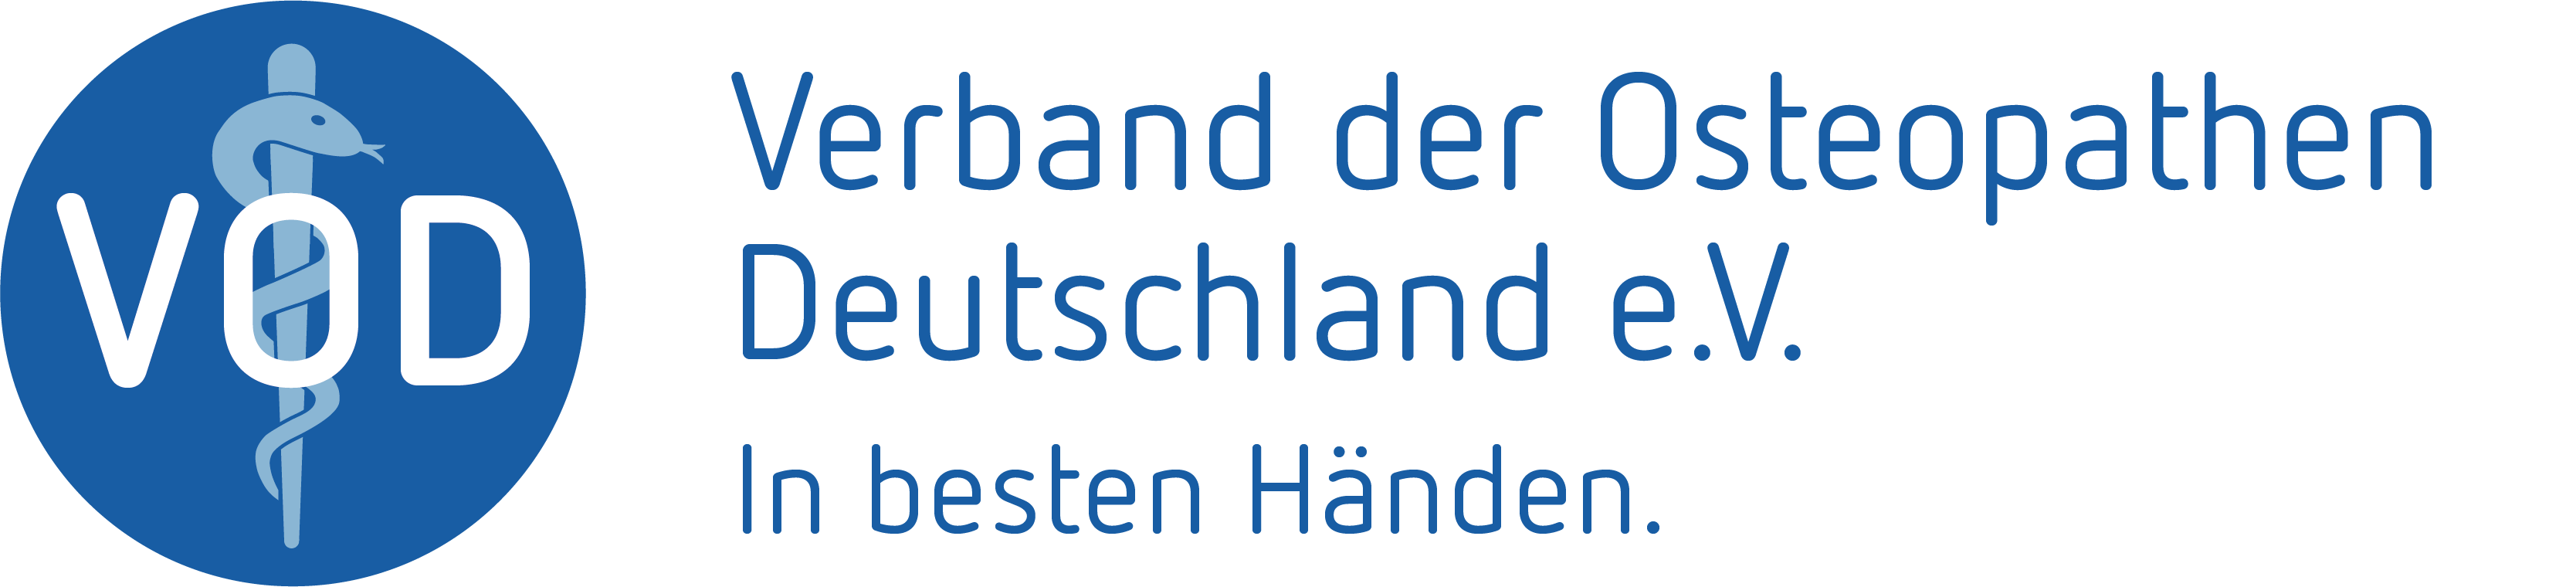 Logo des Verbandes der Osteopathen Deutschland e.V. In besten Händen.